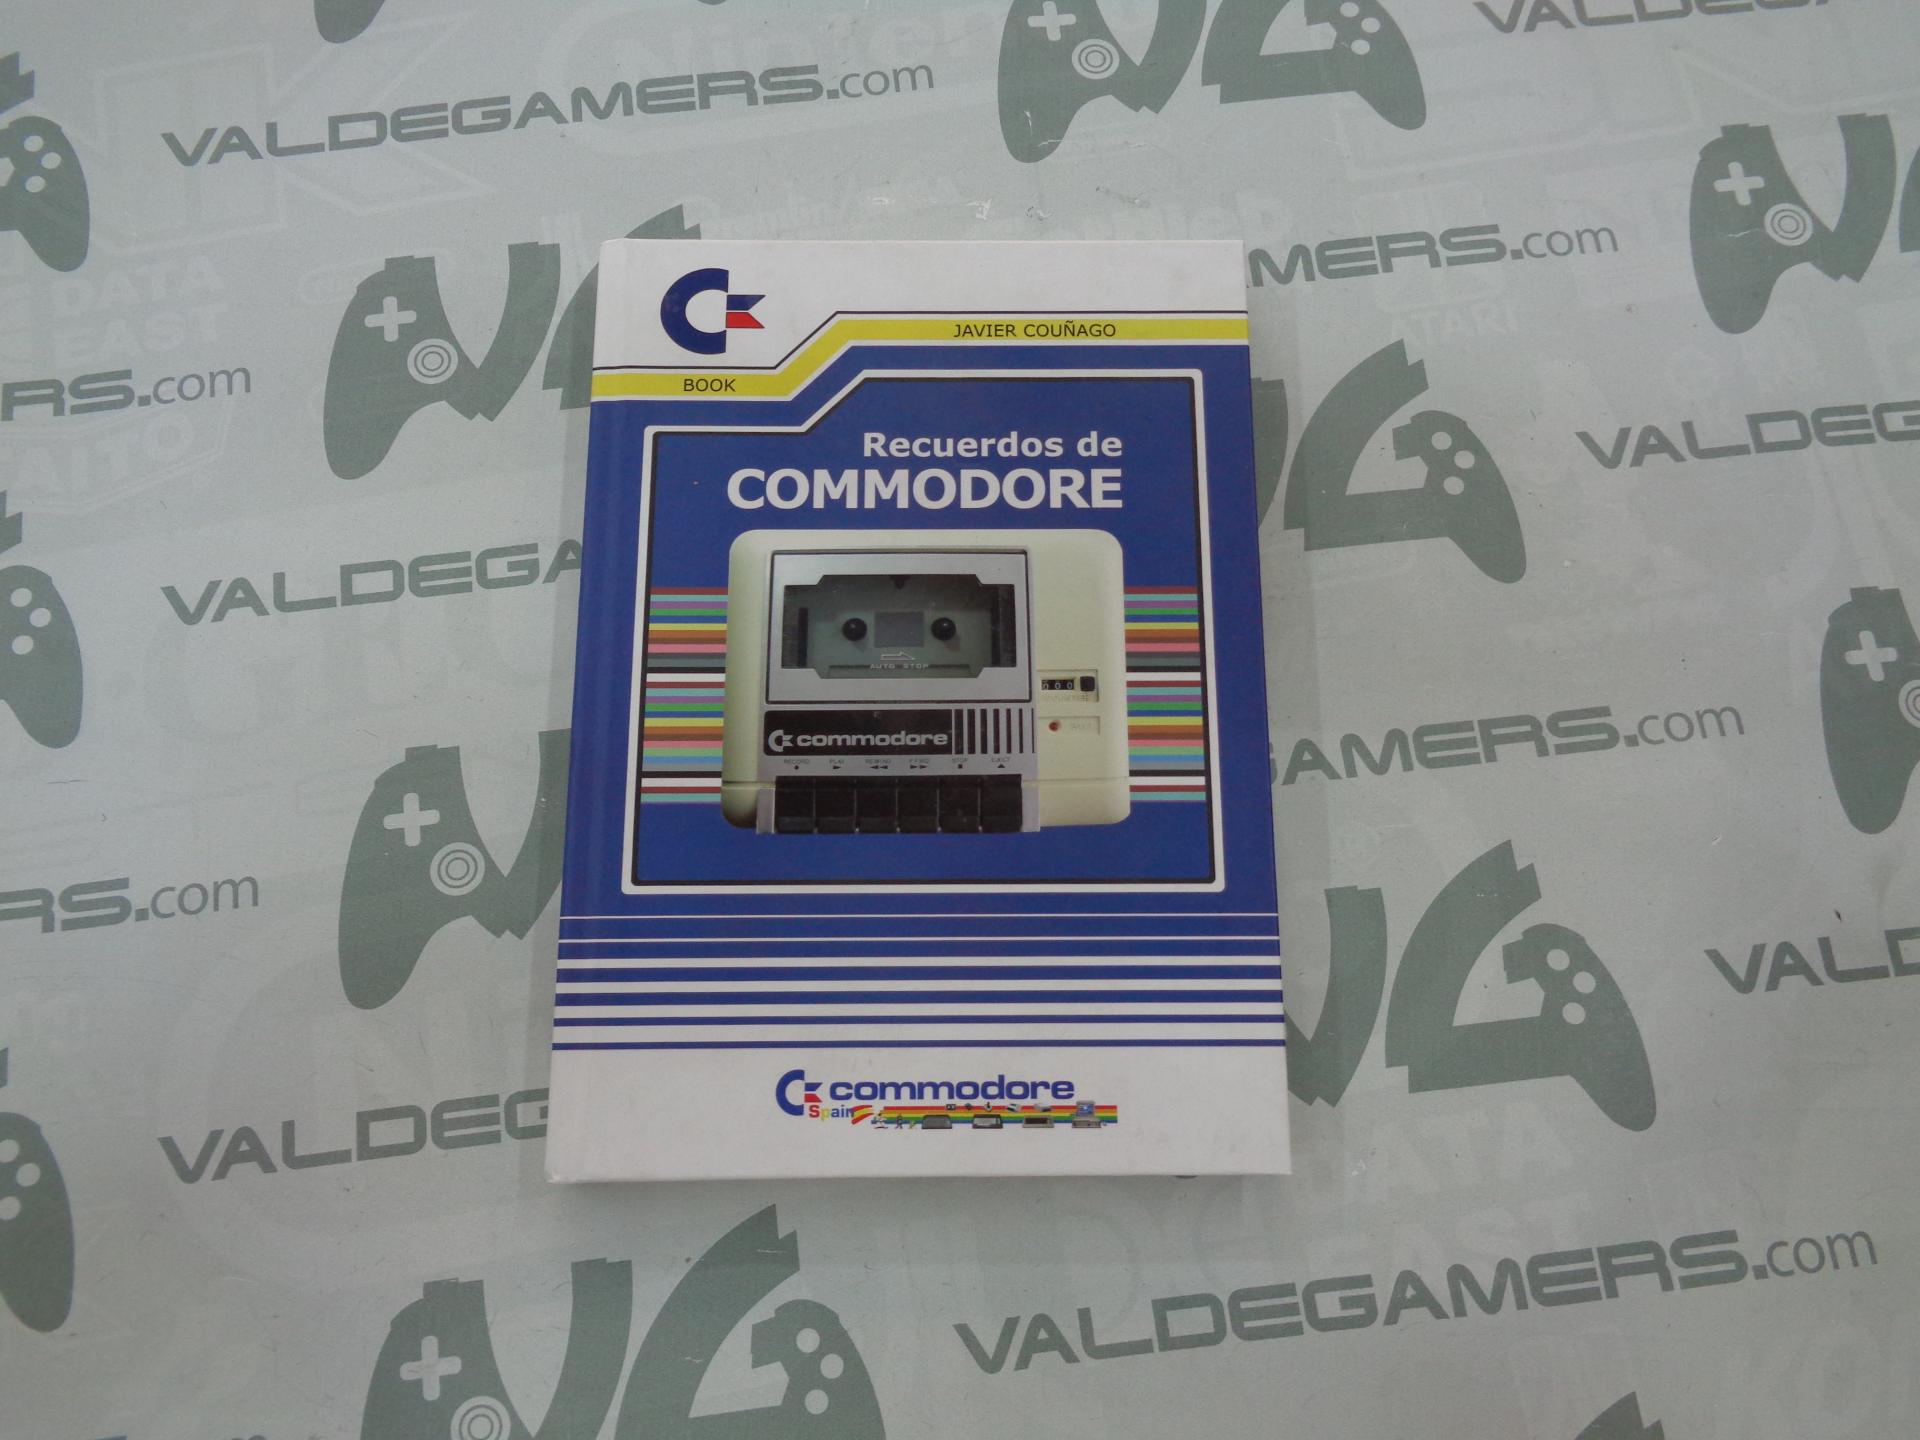 Recuerdos de Commodore